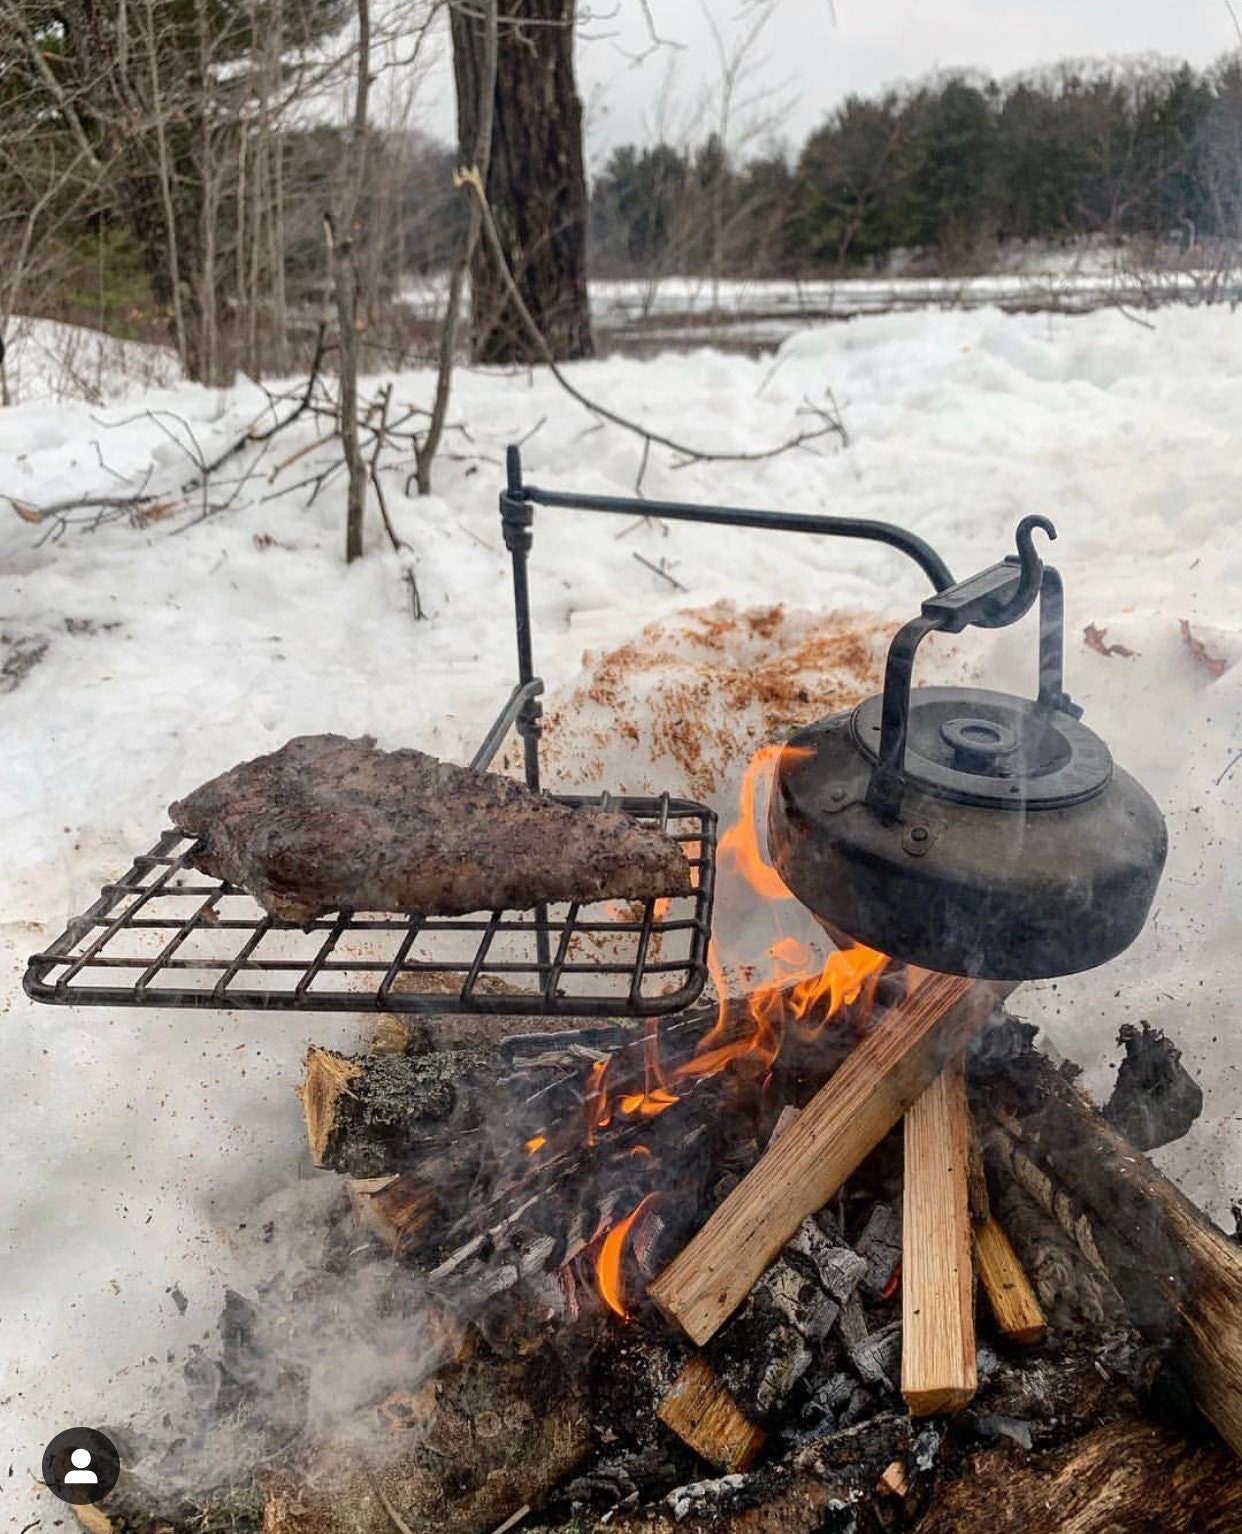 Pie Iron Campfire Wild Turkey BBQ Sandwich - Outdoor News